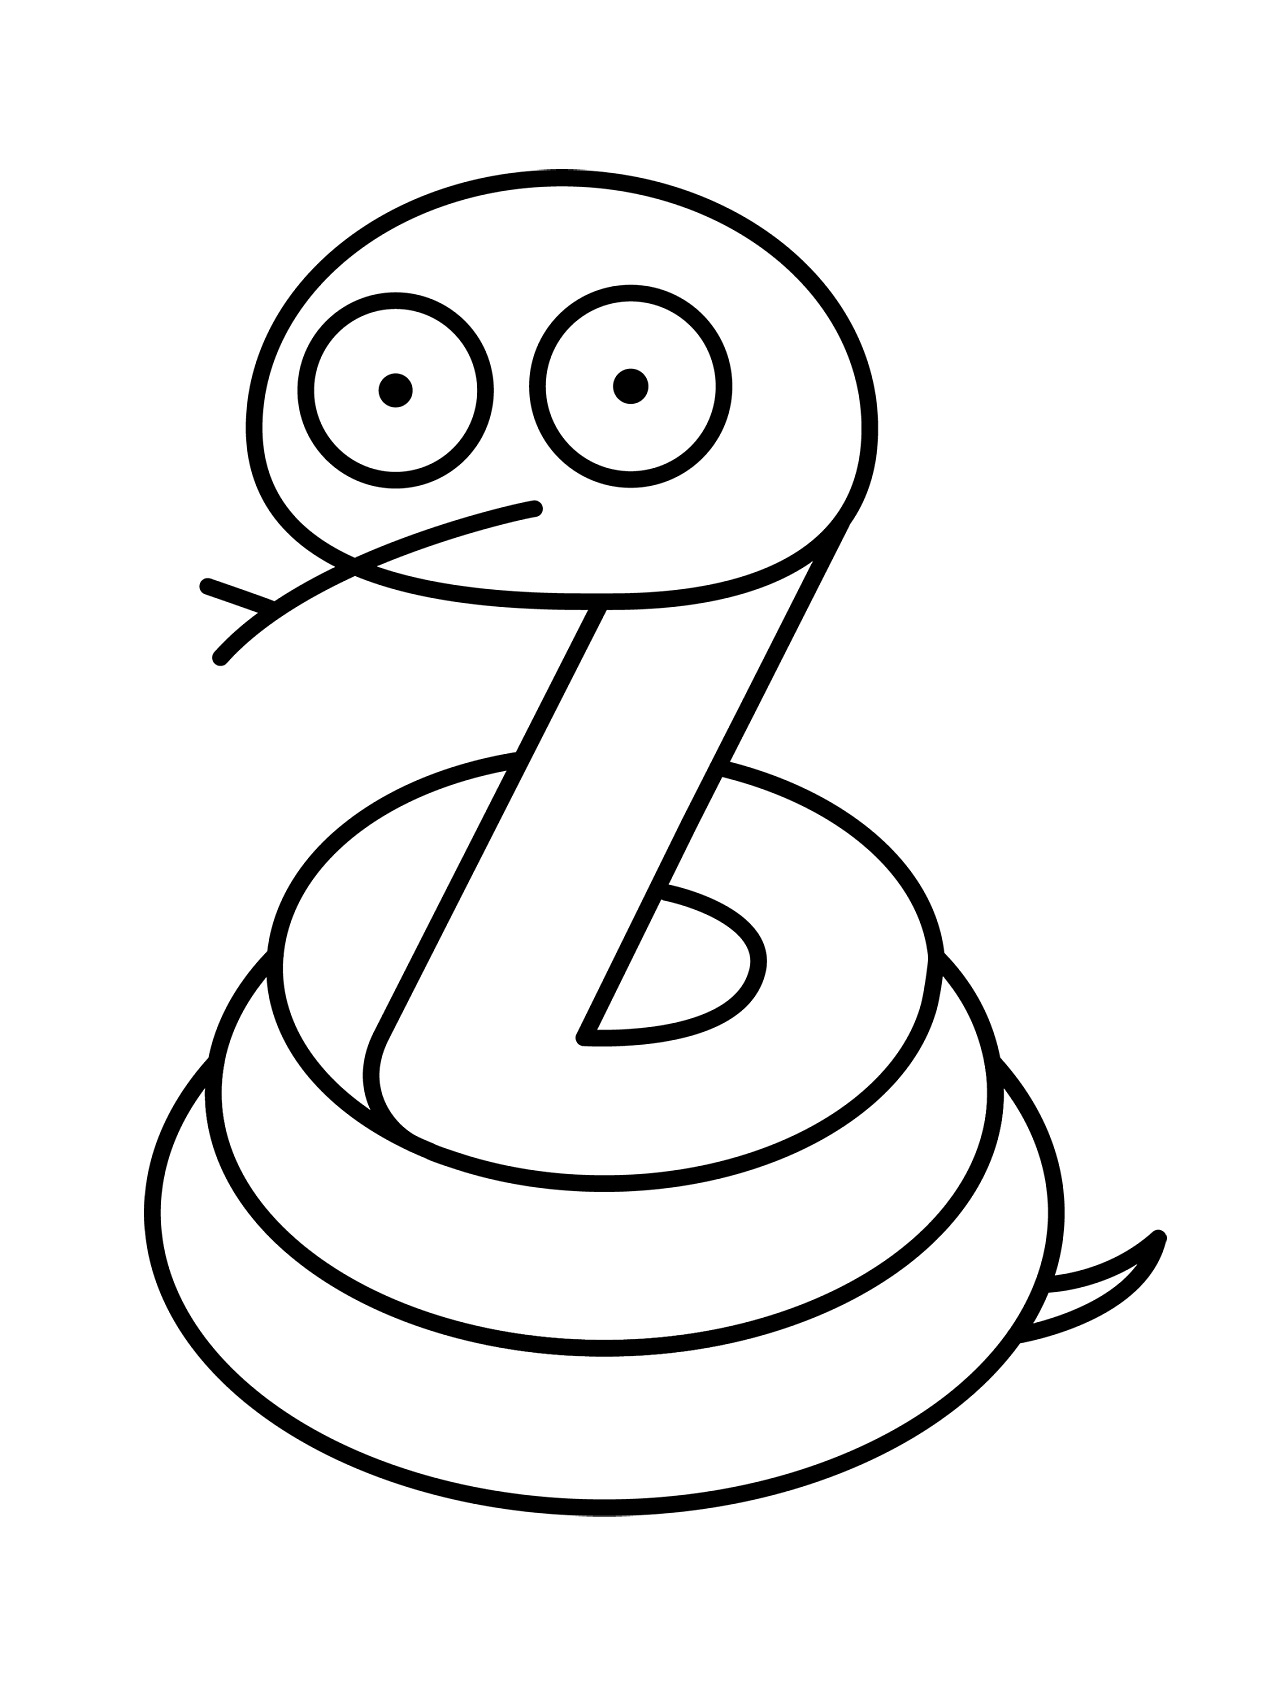 蛇的简笔画可爱卡通图片